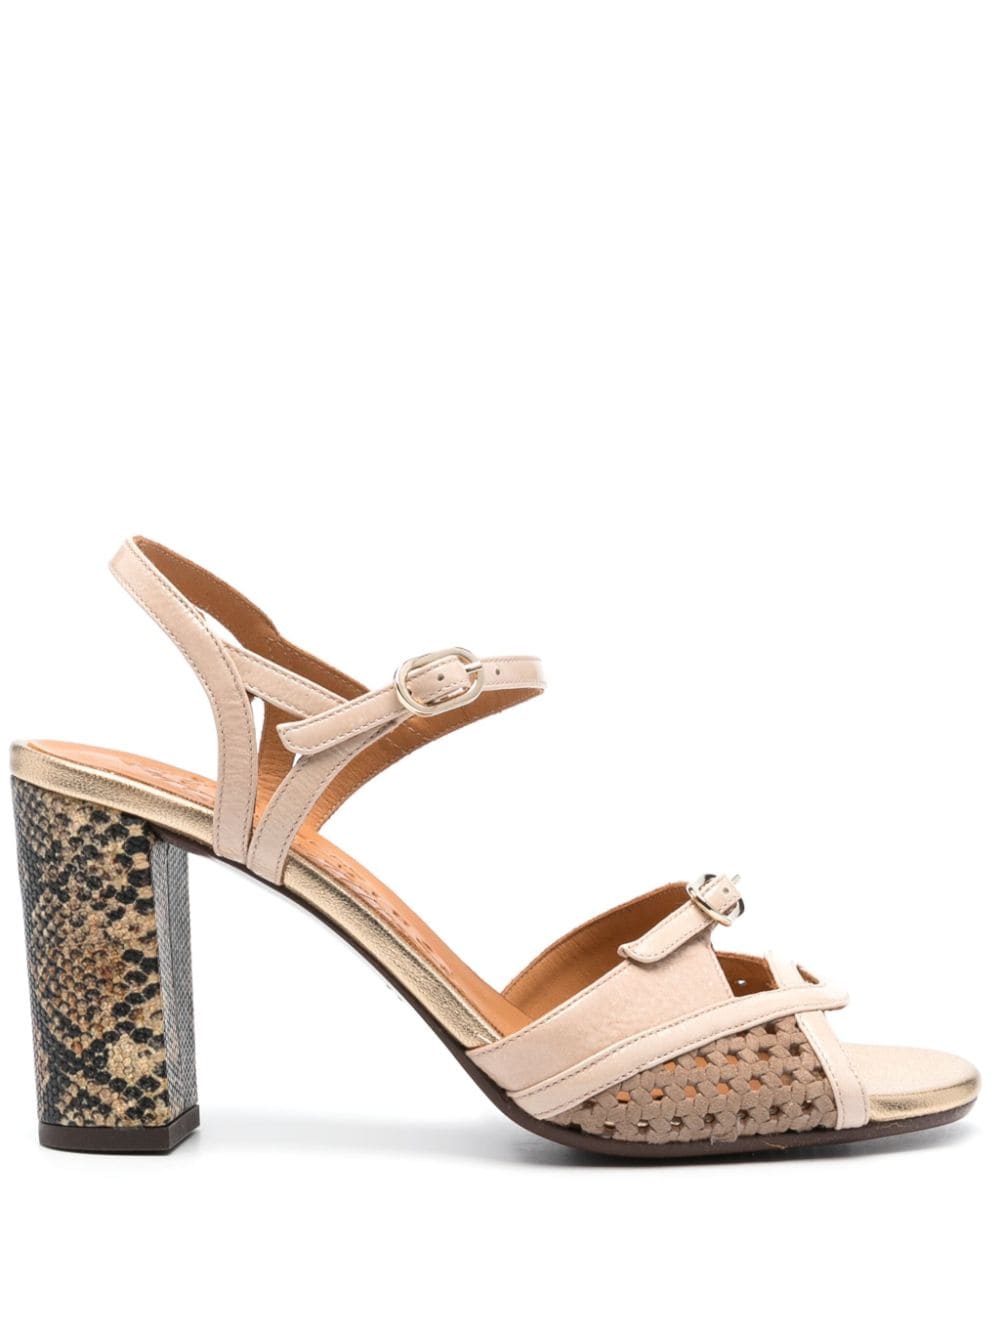 Chie Mihara Bindi 85mm leather sandals - Neutrals von Chie Mihara